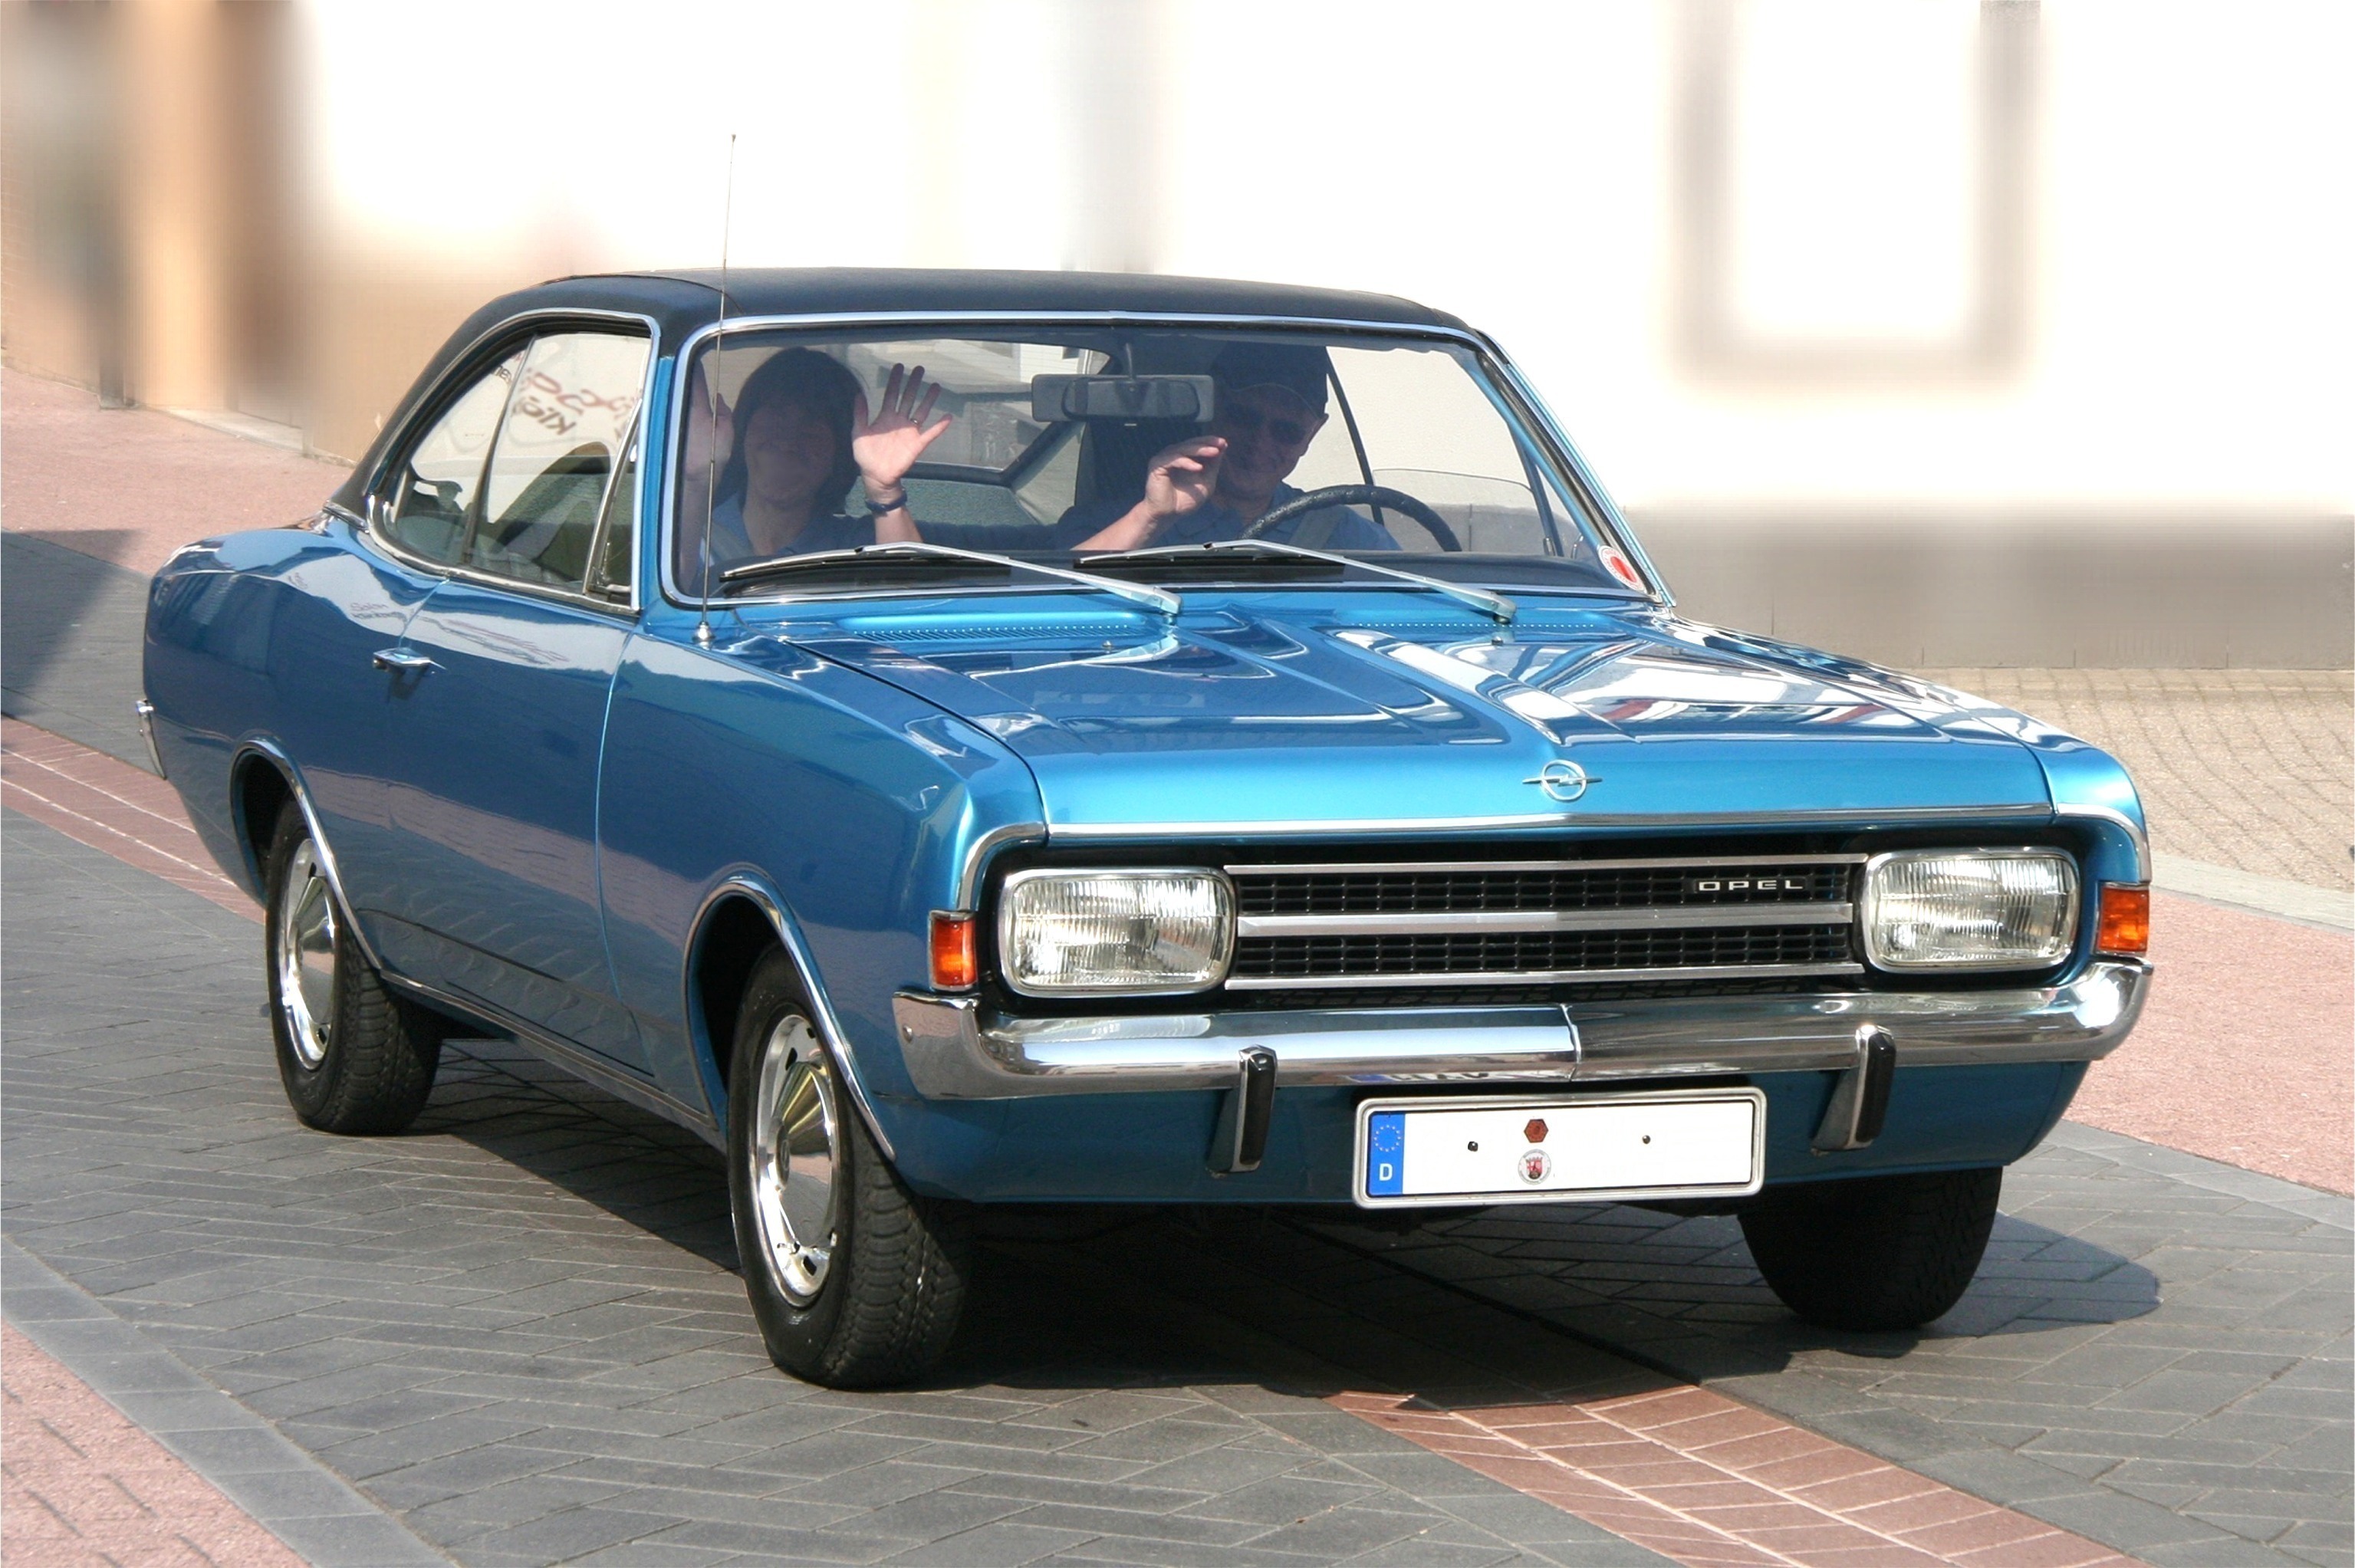 Dossier: Opel Rekord 1900 L, Bj. 1971 (2009-05-01